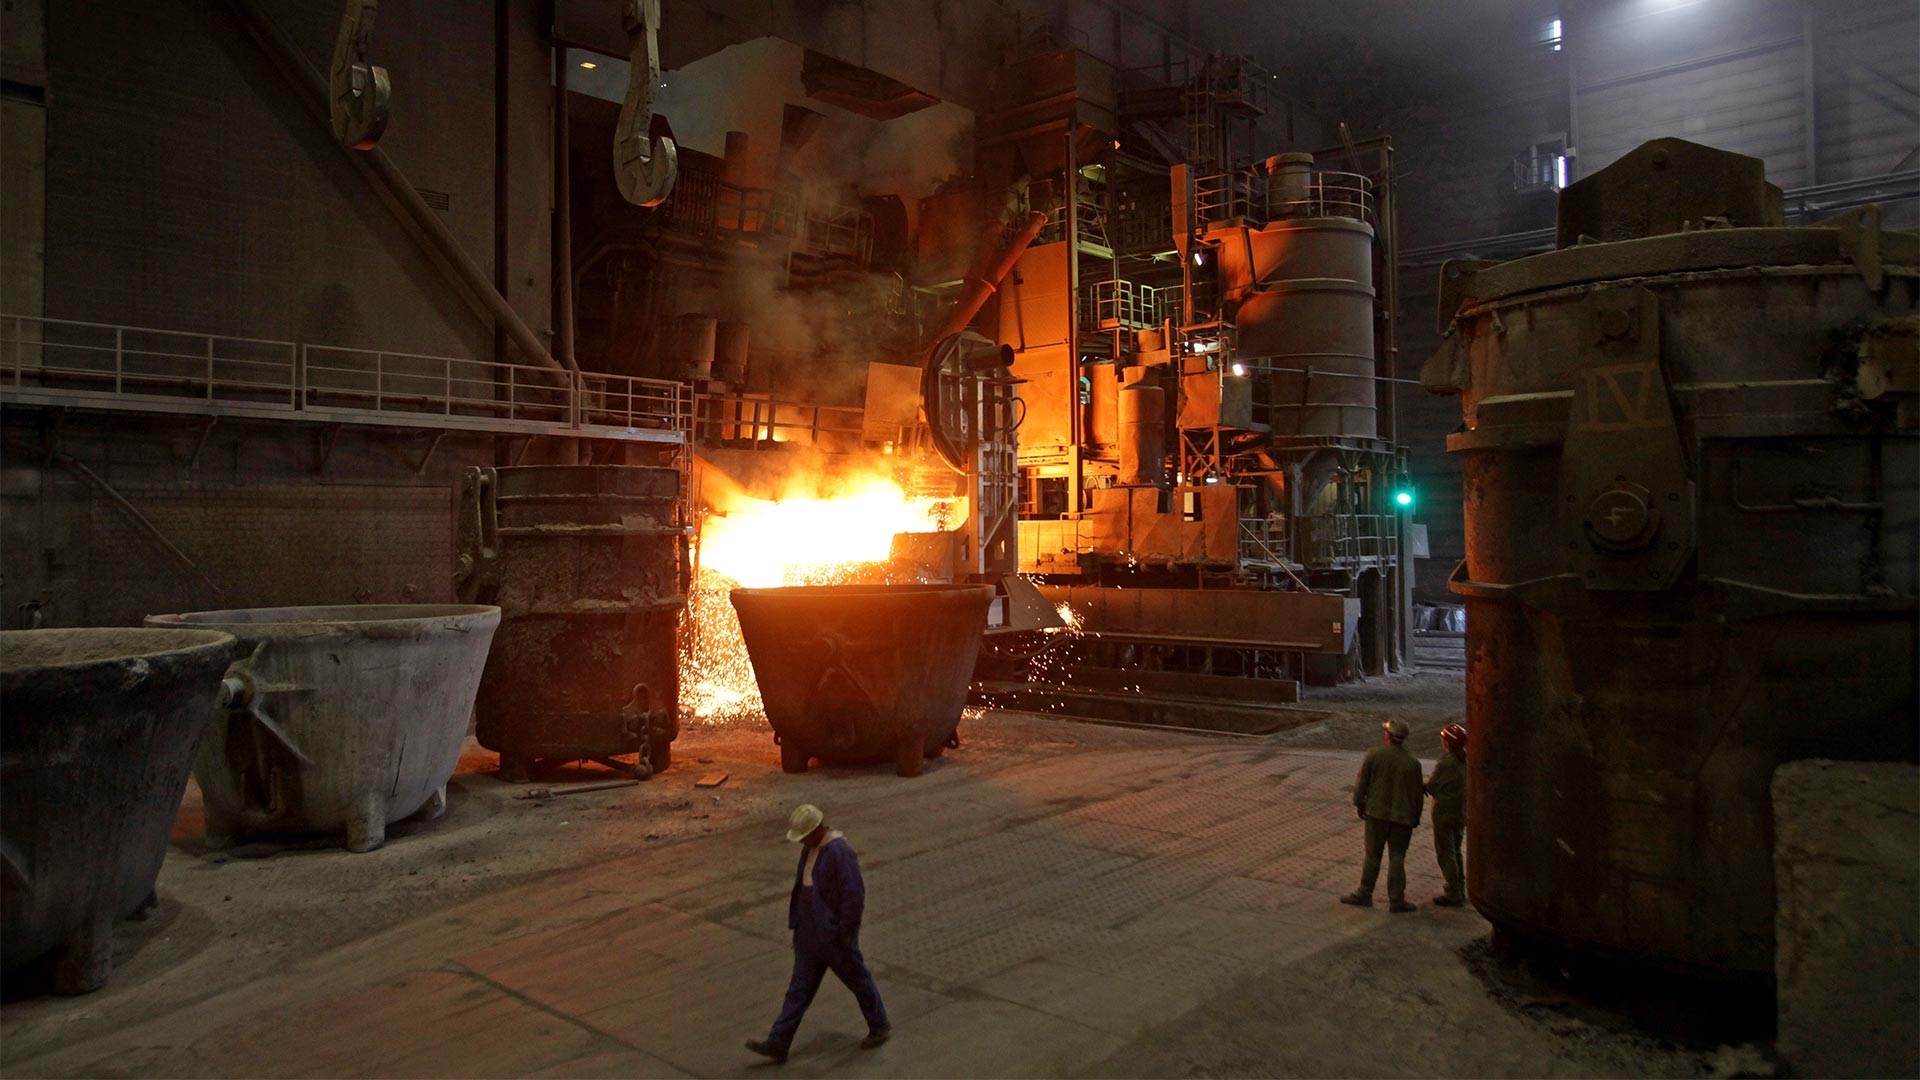 Stahlwerkshalle von ArcelorMittal in Hamburg | picture alliance / dpa